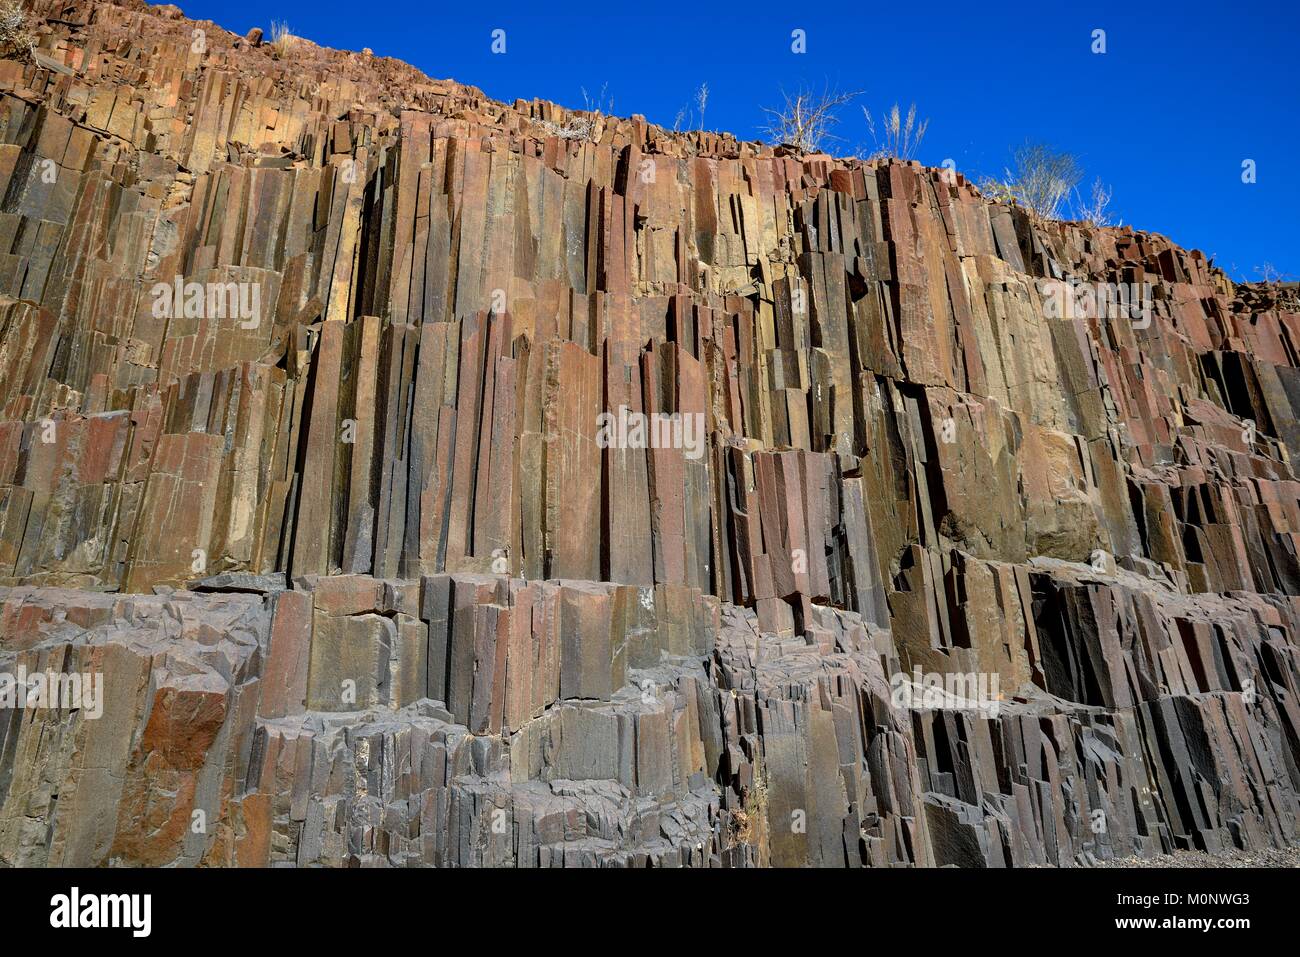 Les colonnes de basalte,tuyaux d'orgue fait de basalte,près de Twyfelfontein,région de Kunene, Namibie Banque D'Images